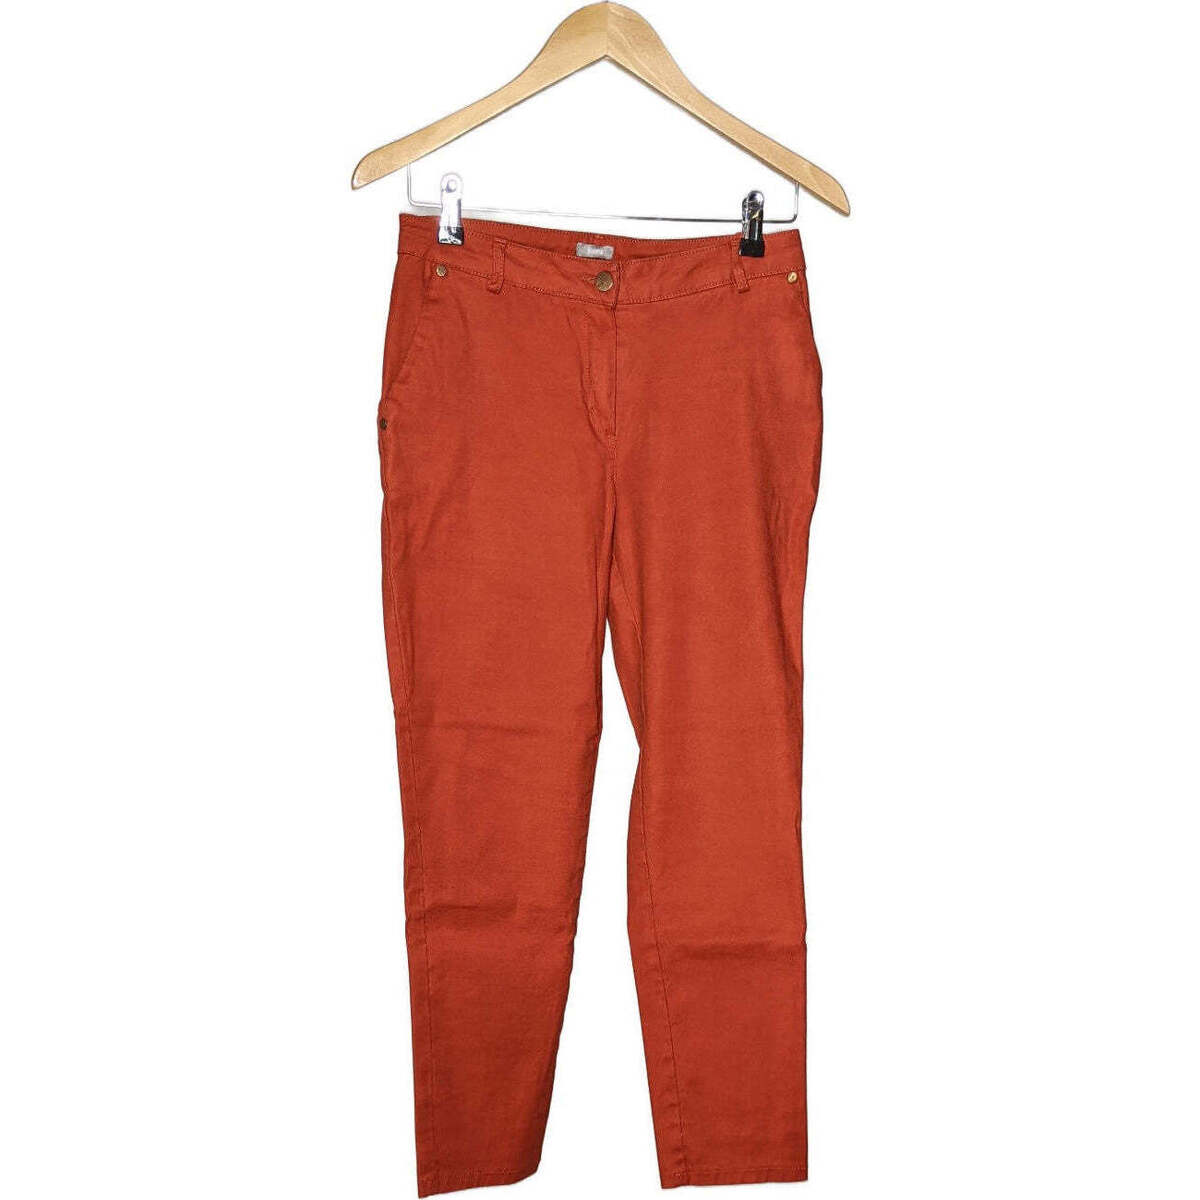 Vêtements Femme Pantalons Formul 36 - T1 - S Orange